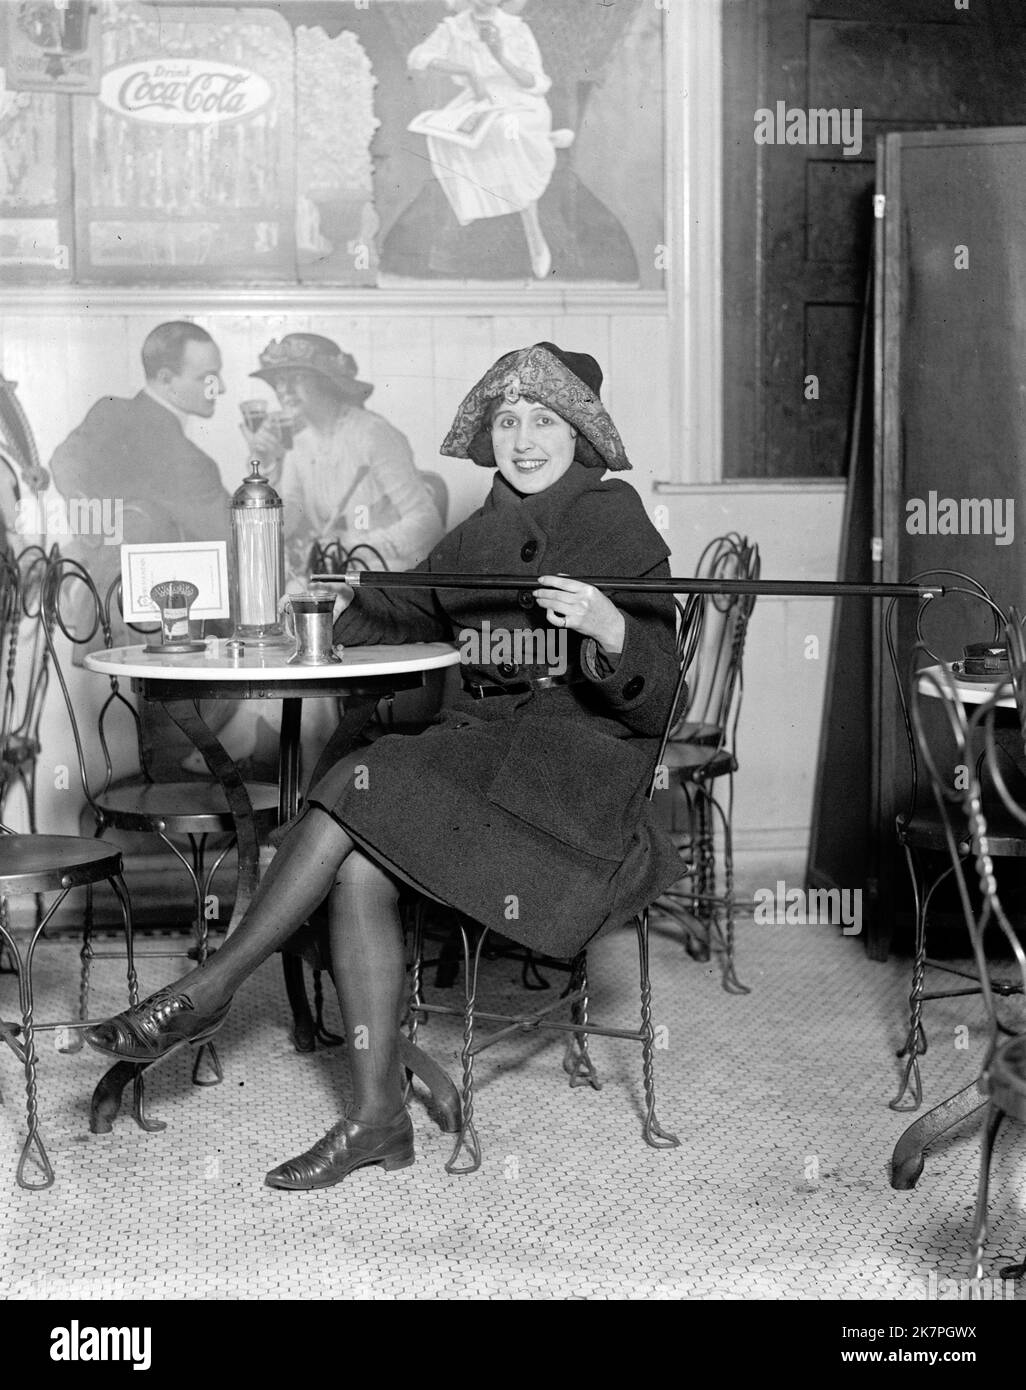 Donna seduto a un tavolo fontana di soda è versare l'alcol in una tazza da una canna, durante il divieto; con una grande pubblicità Coca-Cola sul muro, America Foto Stock